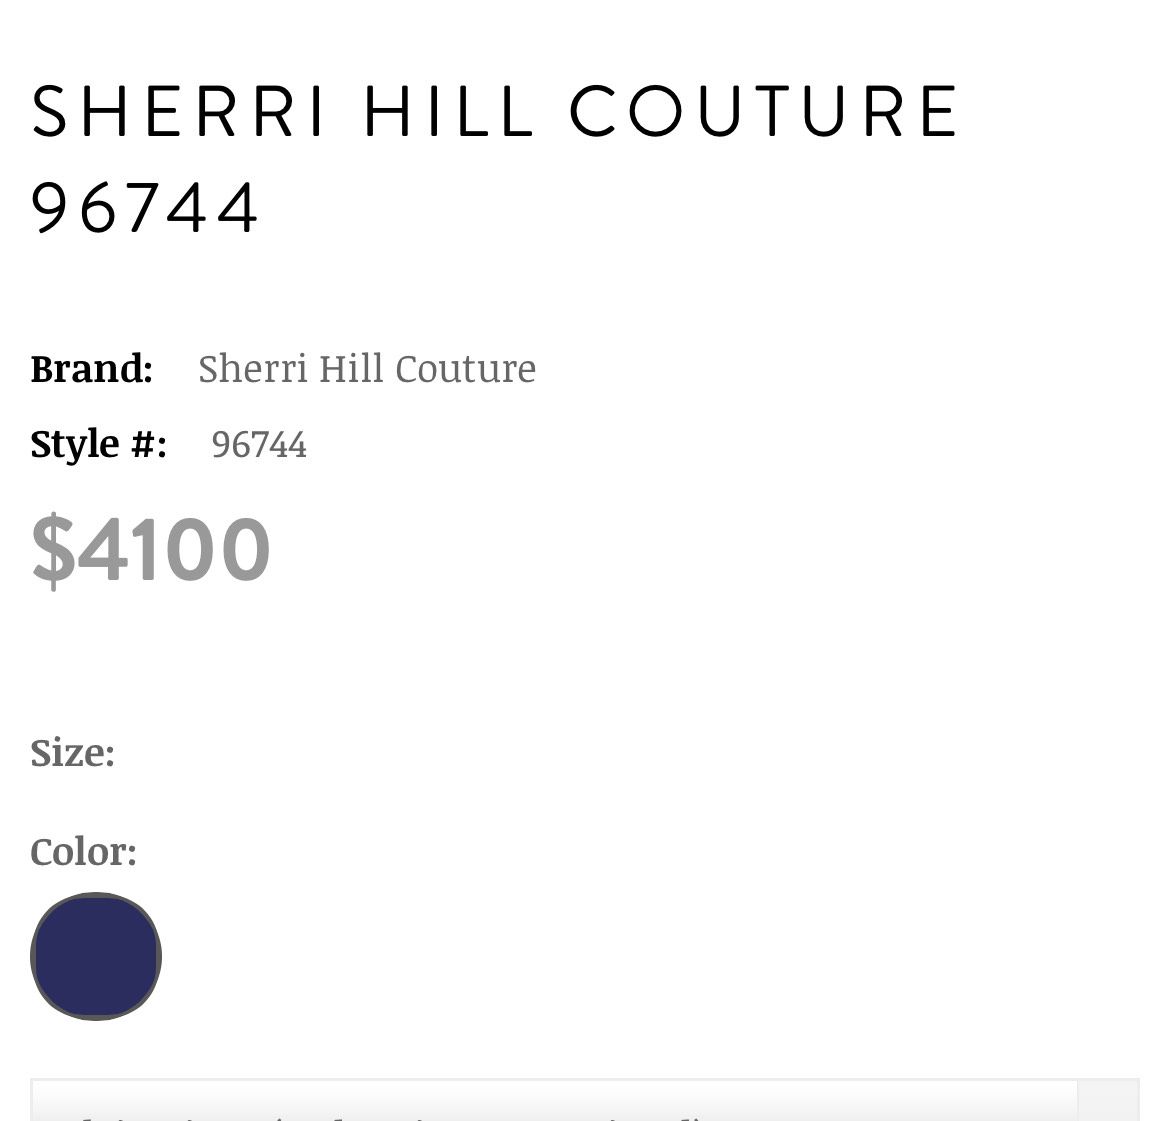 Sherri Hill Size 8 Prom One Shoulder Velvet Navy Blue Mermaid Dress on Queenly